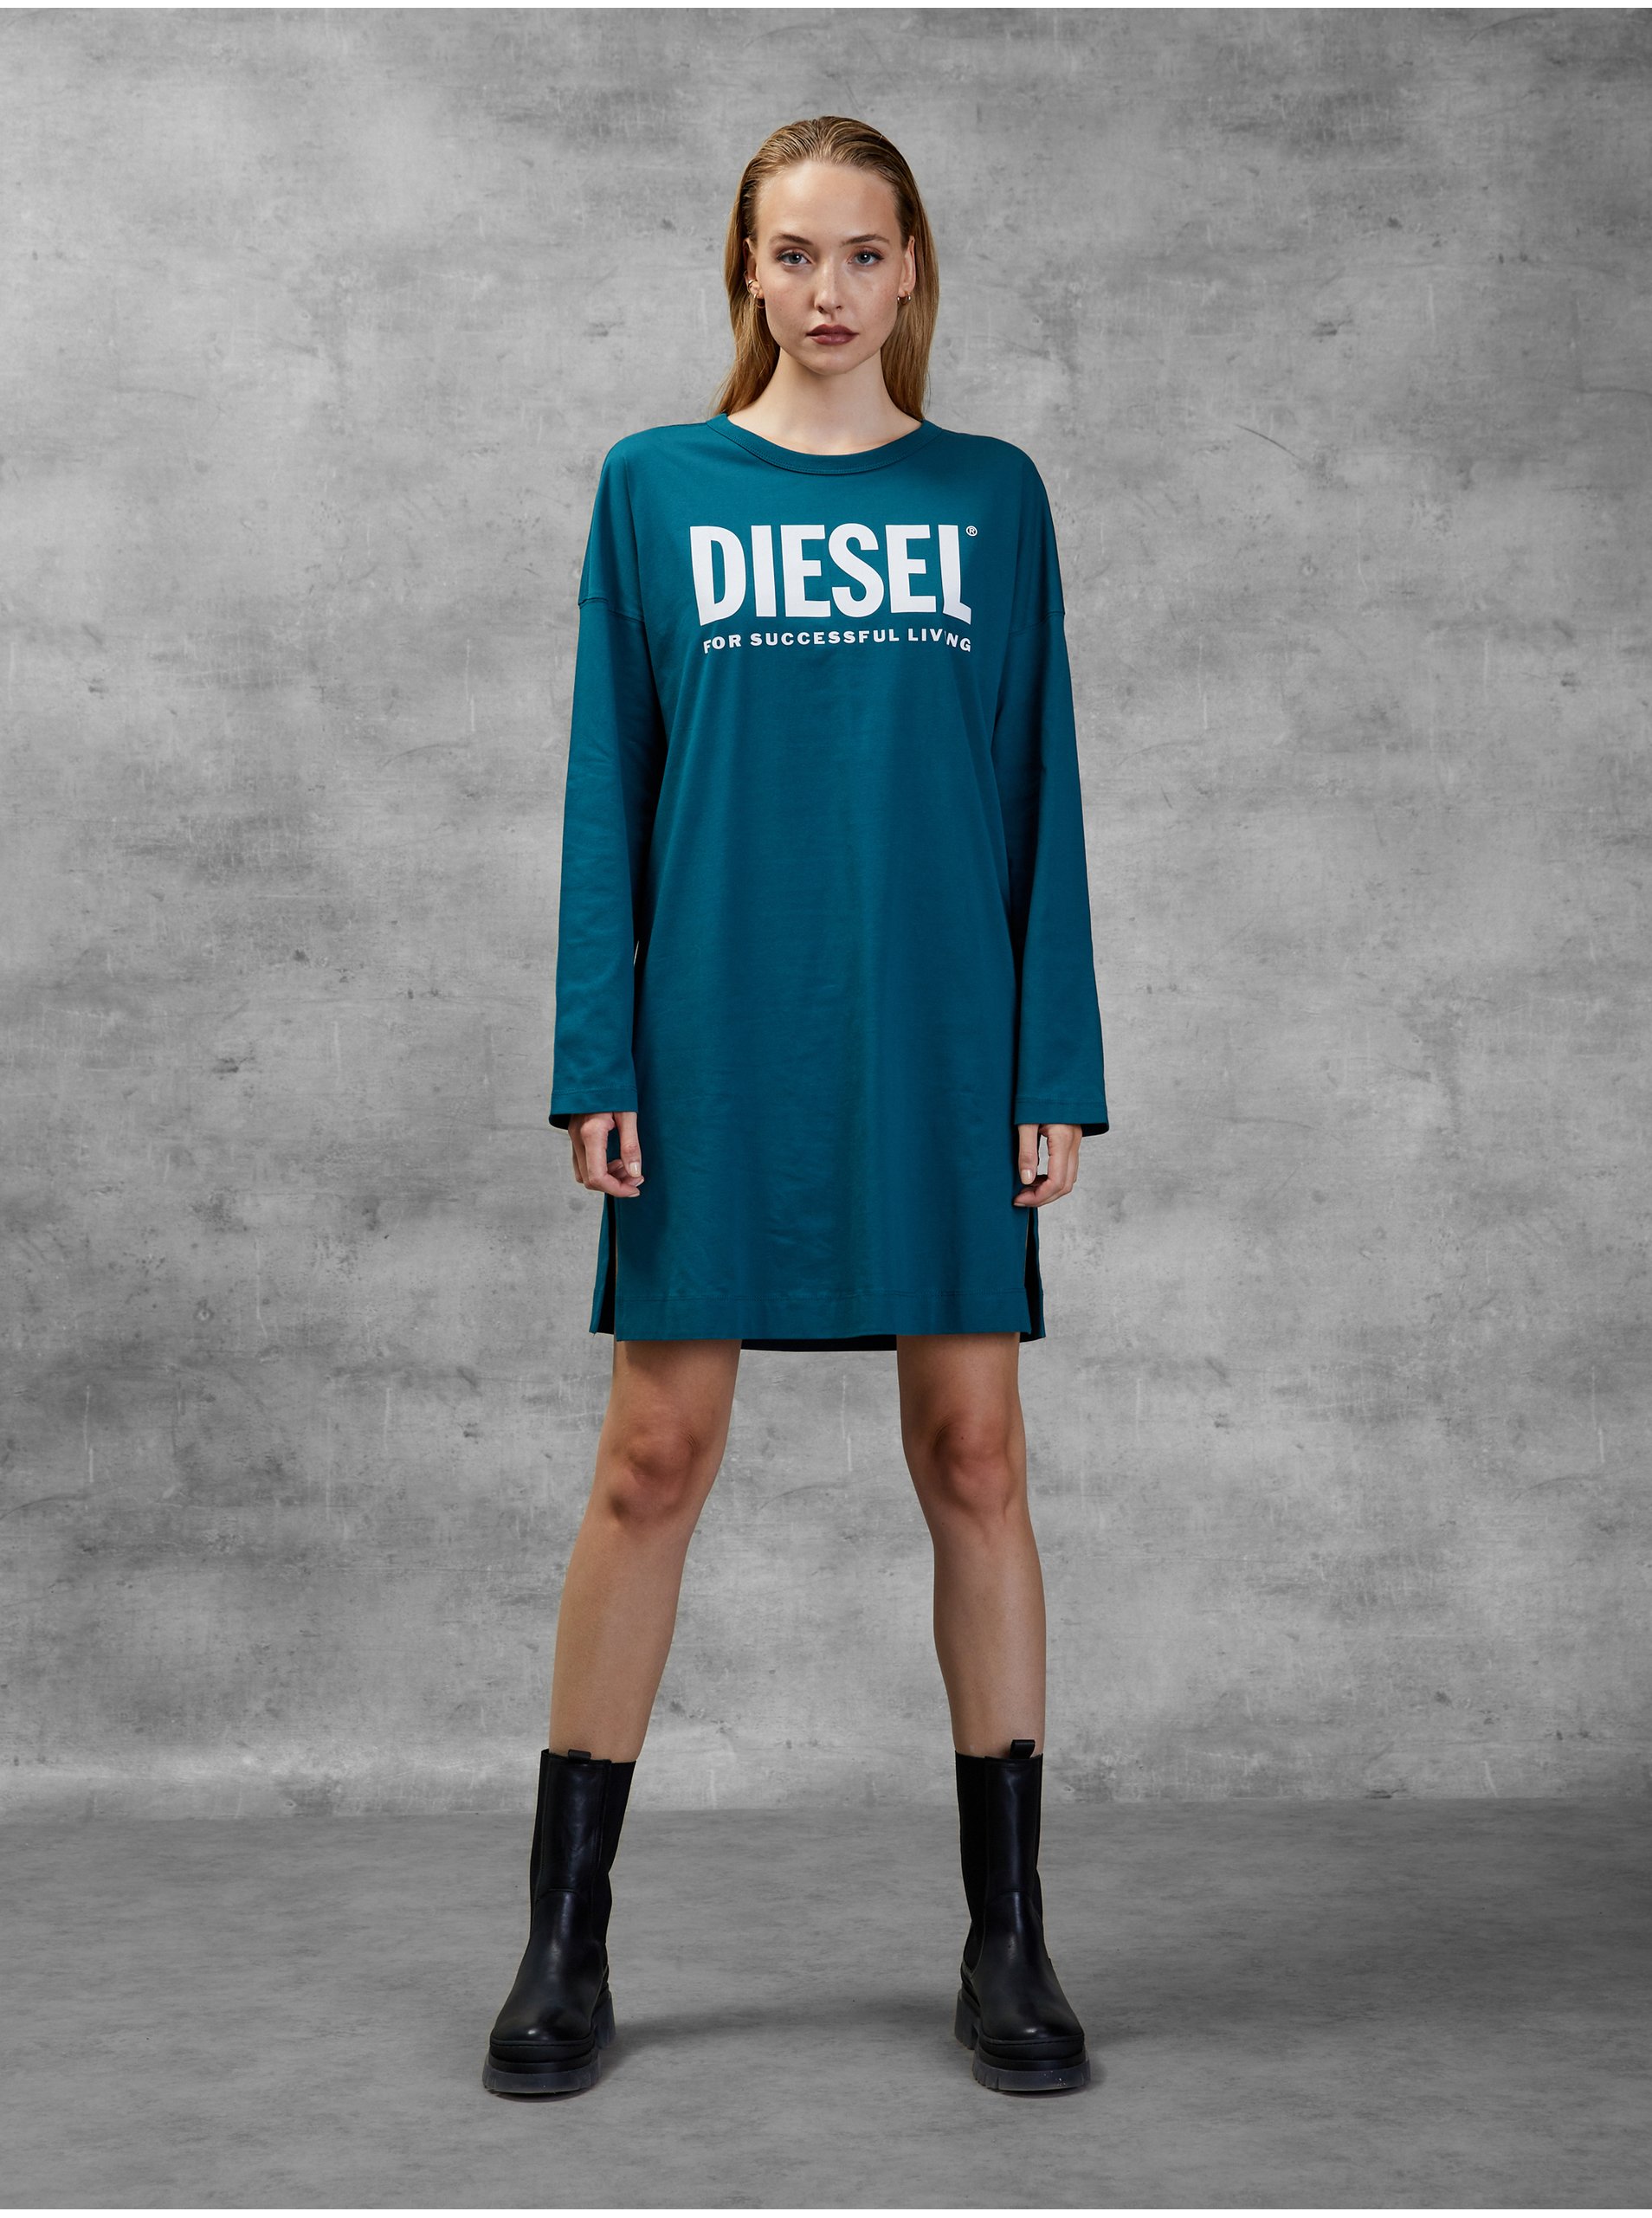 Petrol Women's Diesel Dress - Women's